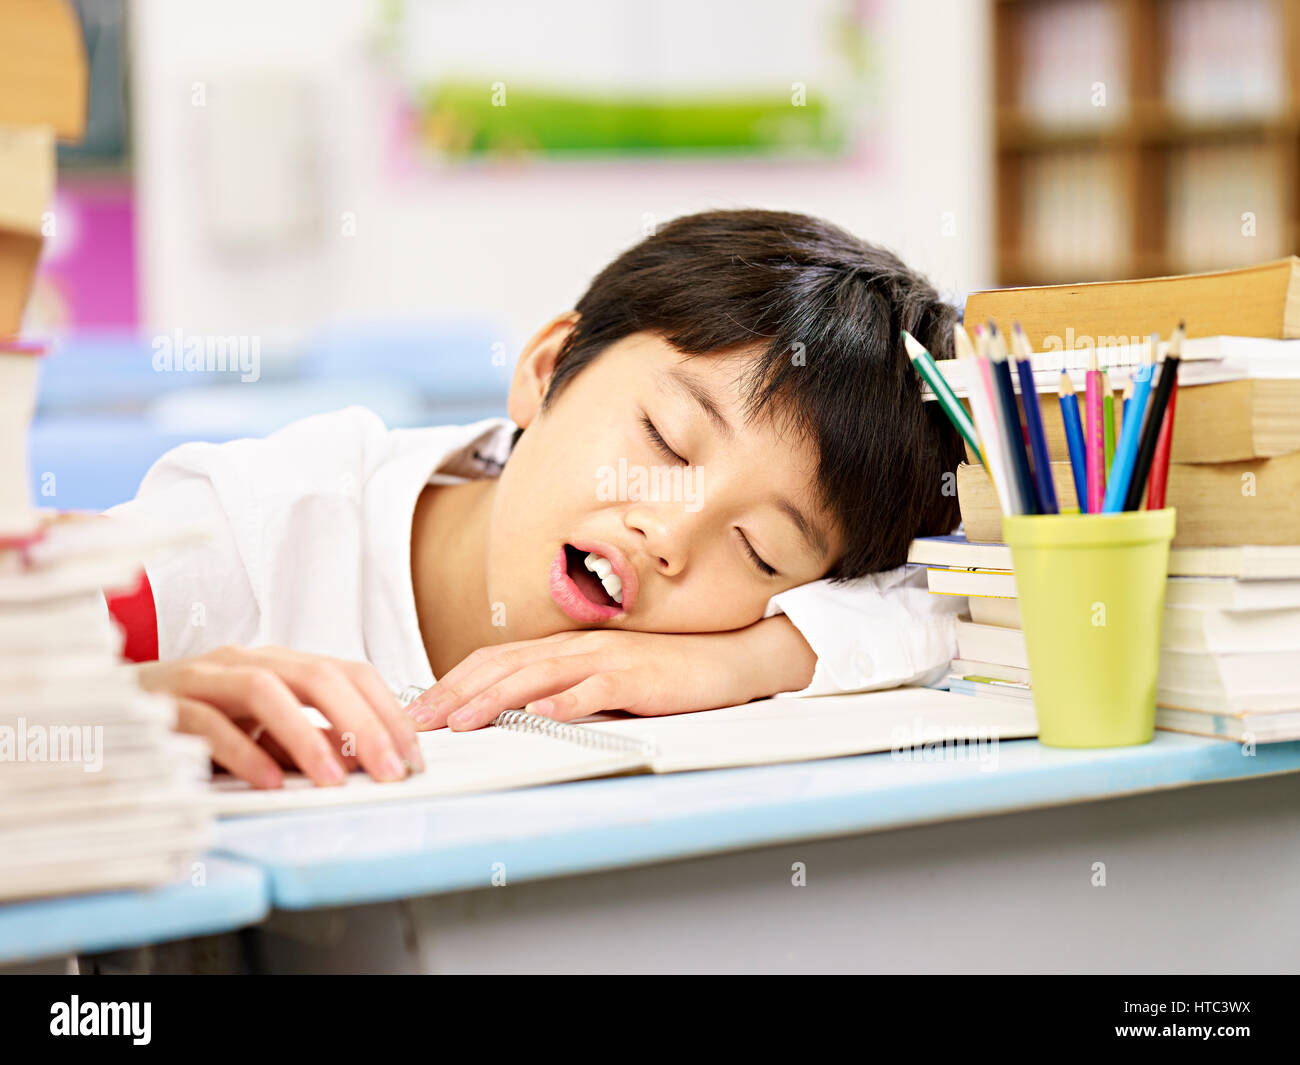 Fatigué et épuisé l'école primaire d'Asie s'endormir, tandis que l'étude de l'étudiant Banque D'Images